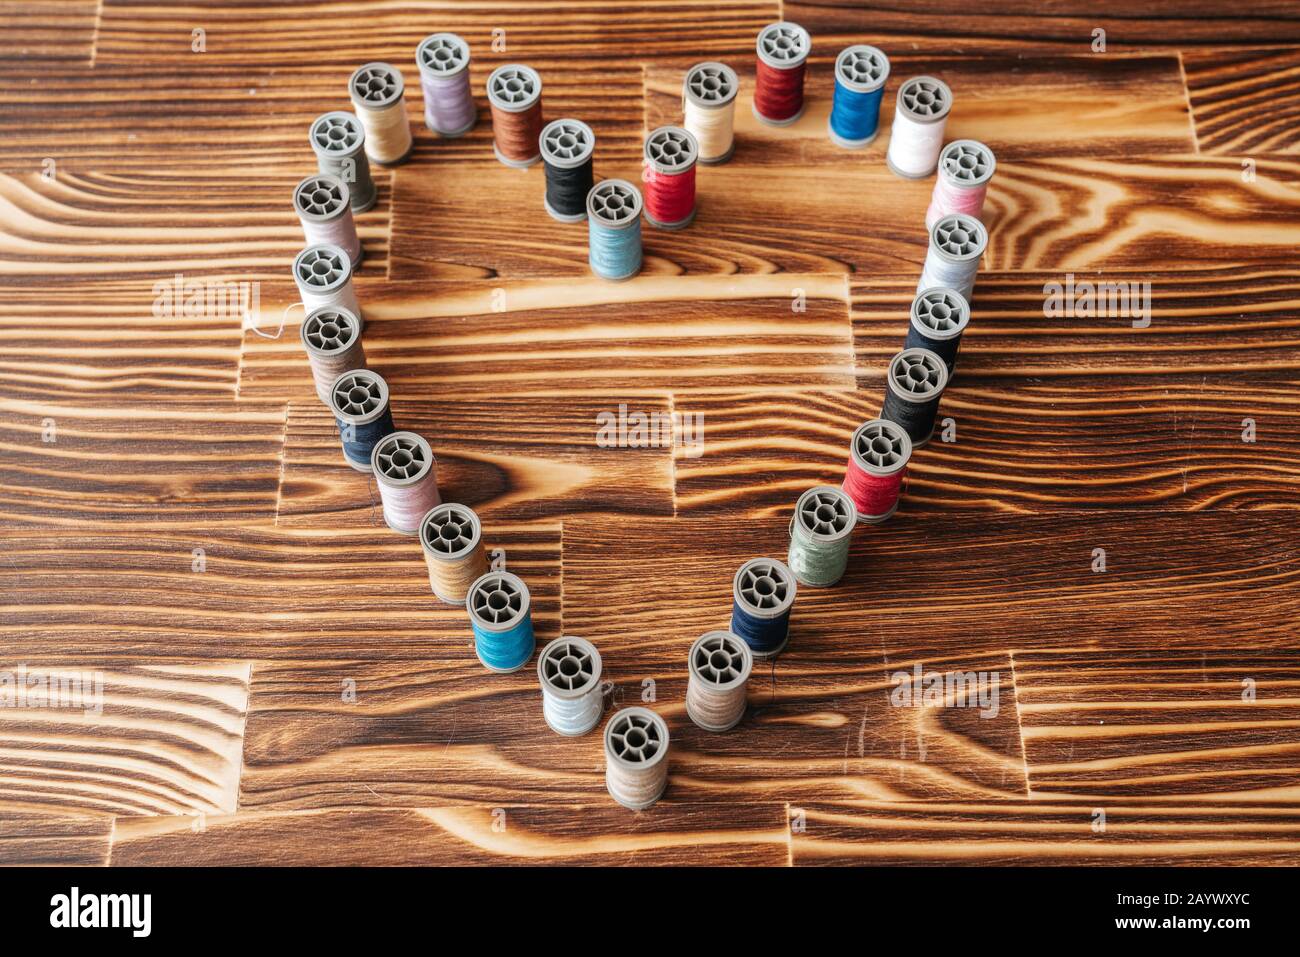 Beaucoup de tiroirs de filetage aline côte à côte en forme de coeur sur un fond en bois Banque D'Images